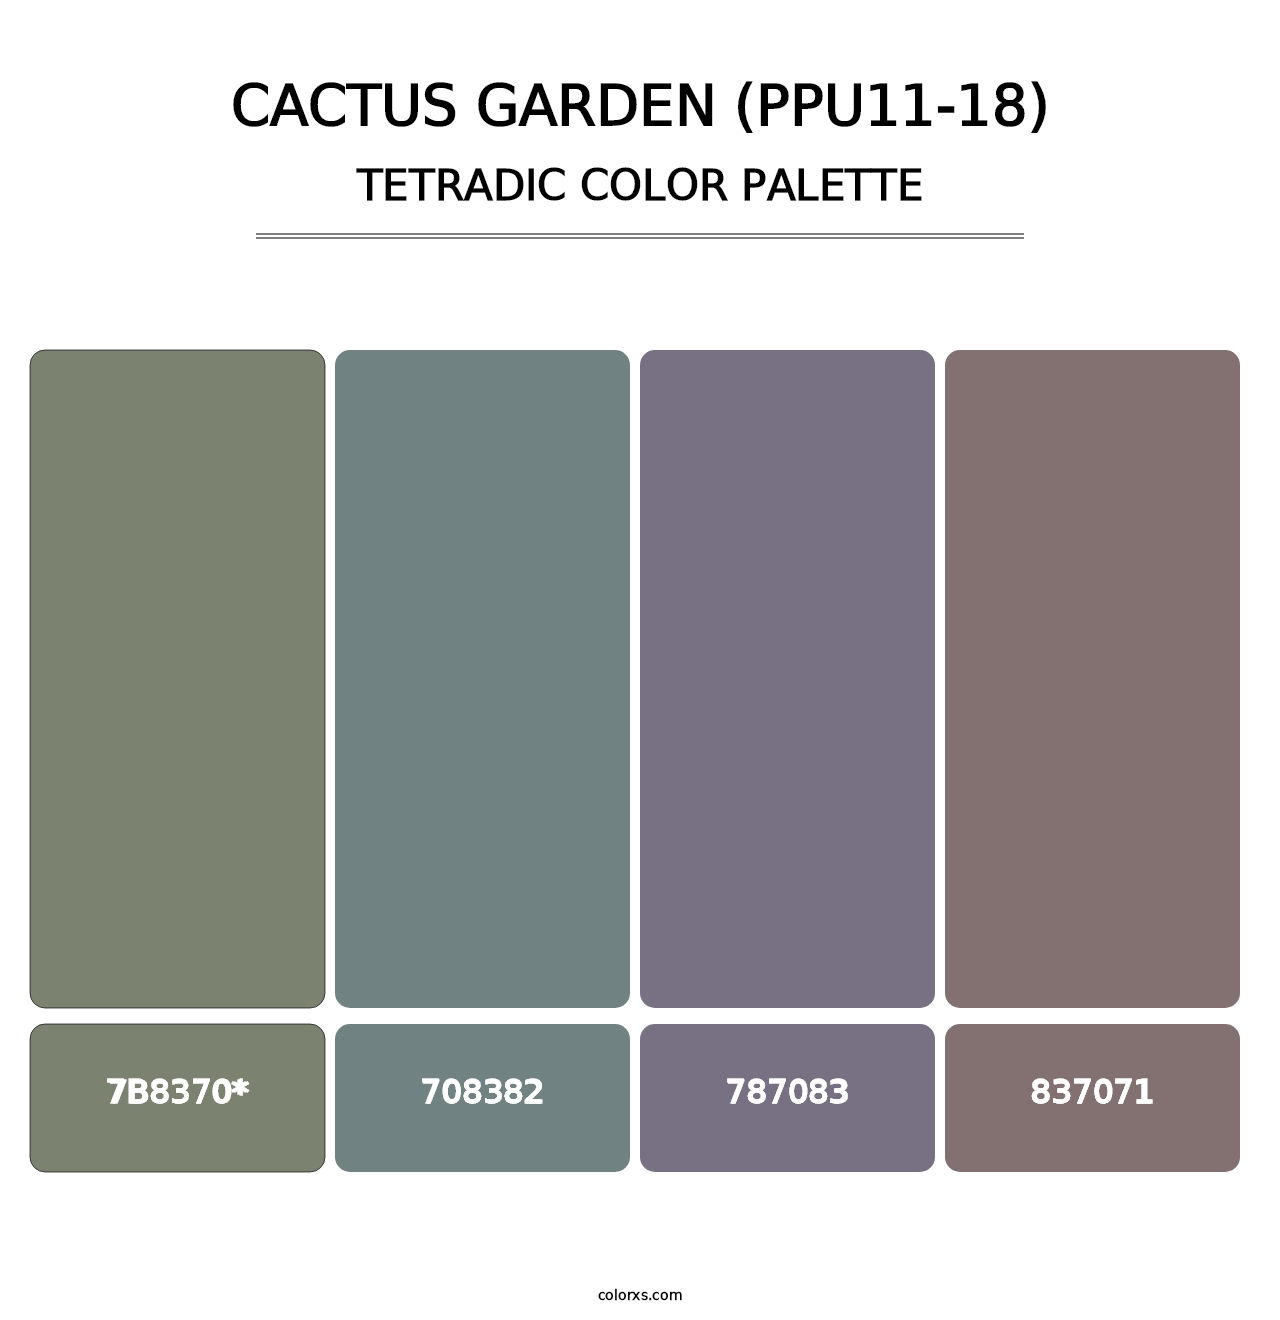 Cactus Garden (PPU11-18) - Tetradic Color Palette